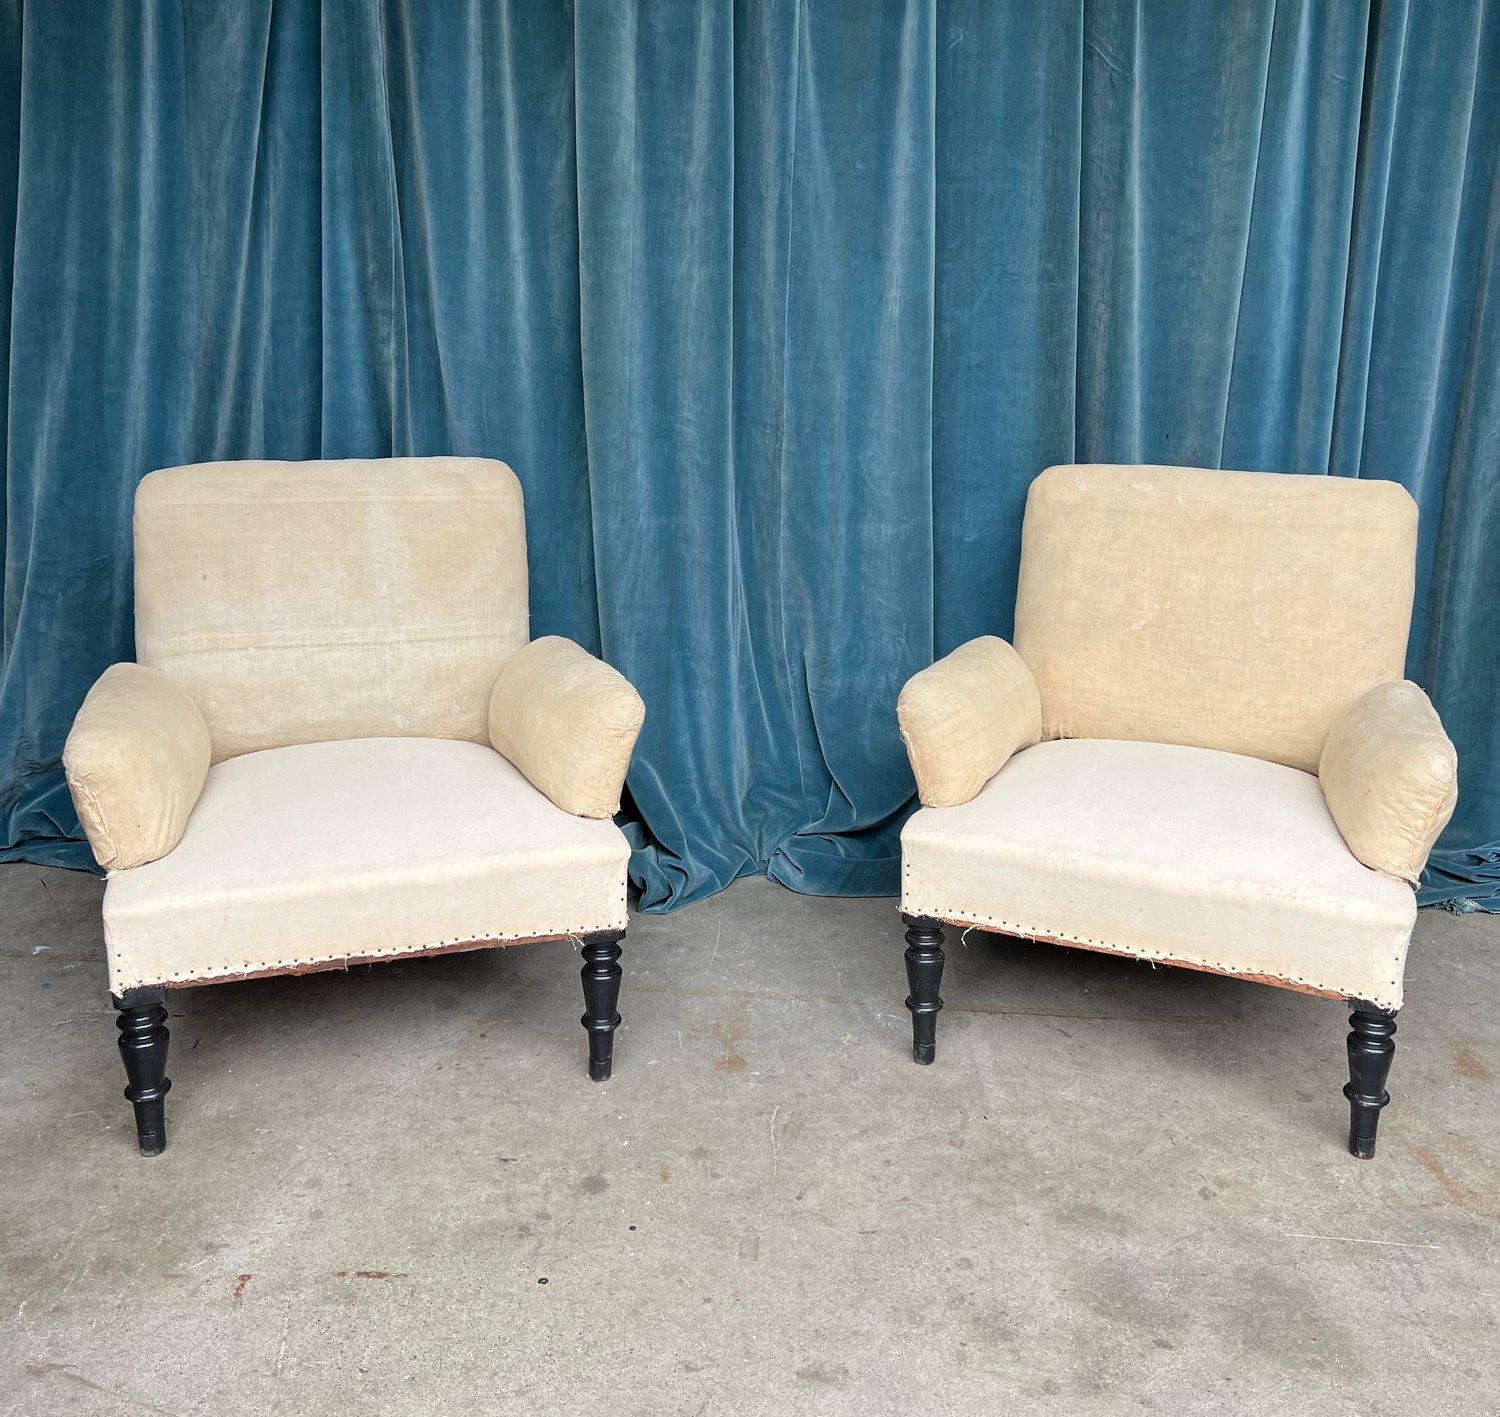 Ein ungewöhnliches Paar französischer Napoleon-III-Sessel aus dem späten 19. Jahrhundert. Die Stühle haben halb freistehende Armlehnen, die den Stühlen Dimension und Stil verleihen. Sie eignen sich für eine Vielzahl von Umgebungen, von traditionell